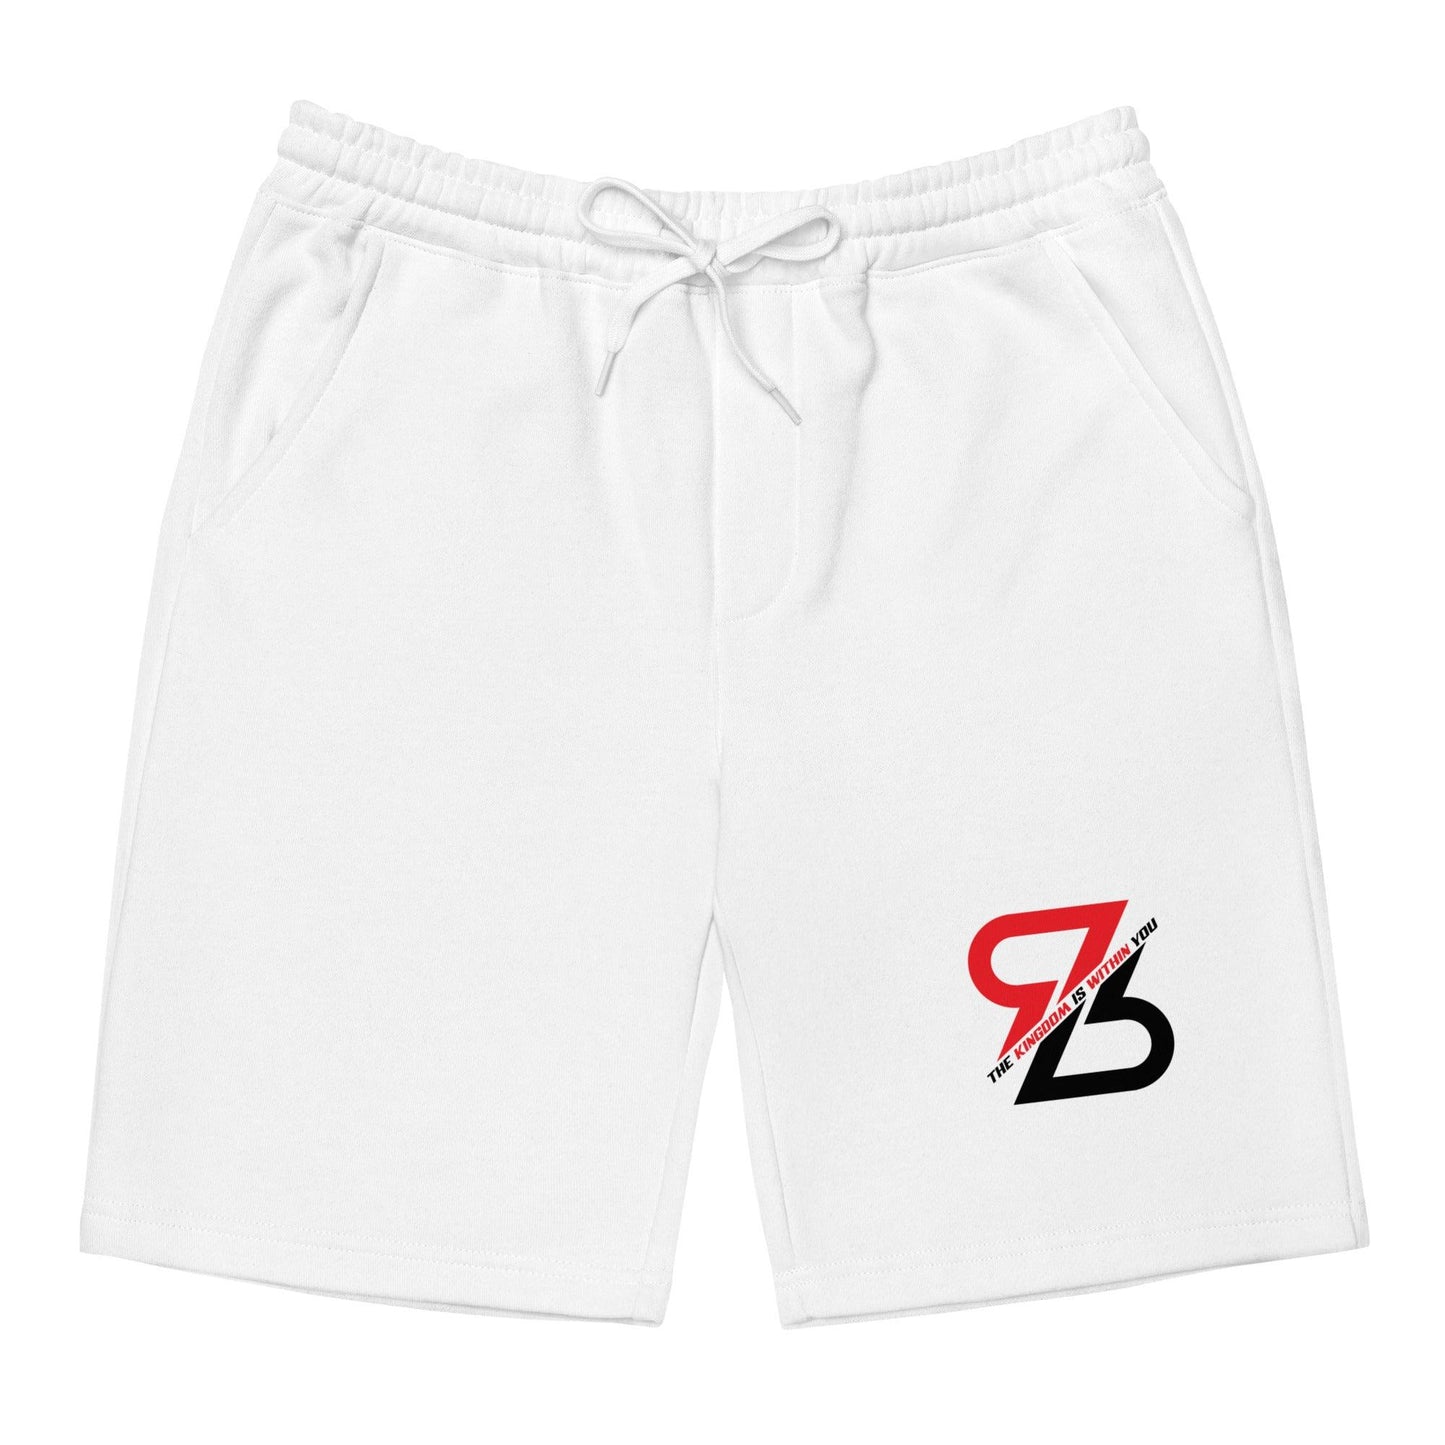 Reggie Begelton "RB" shorts - Fan Arch